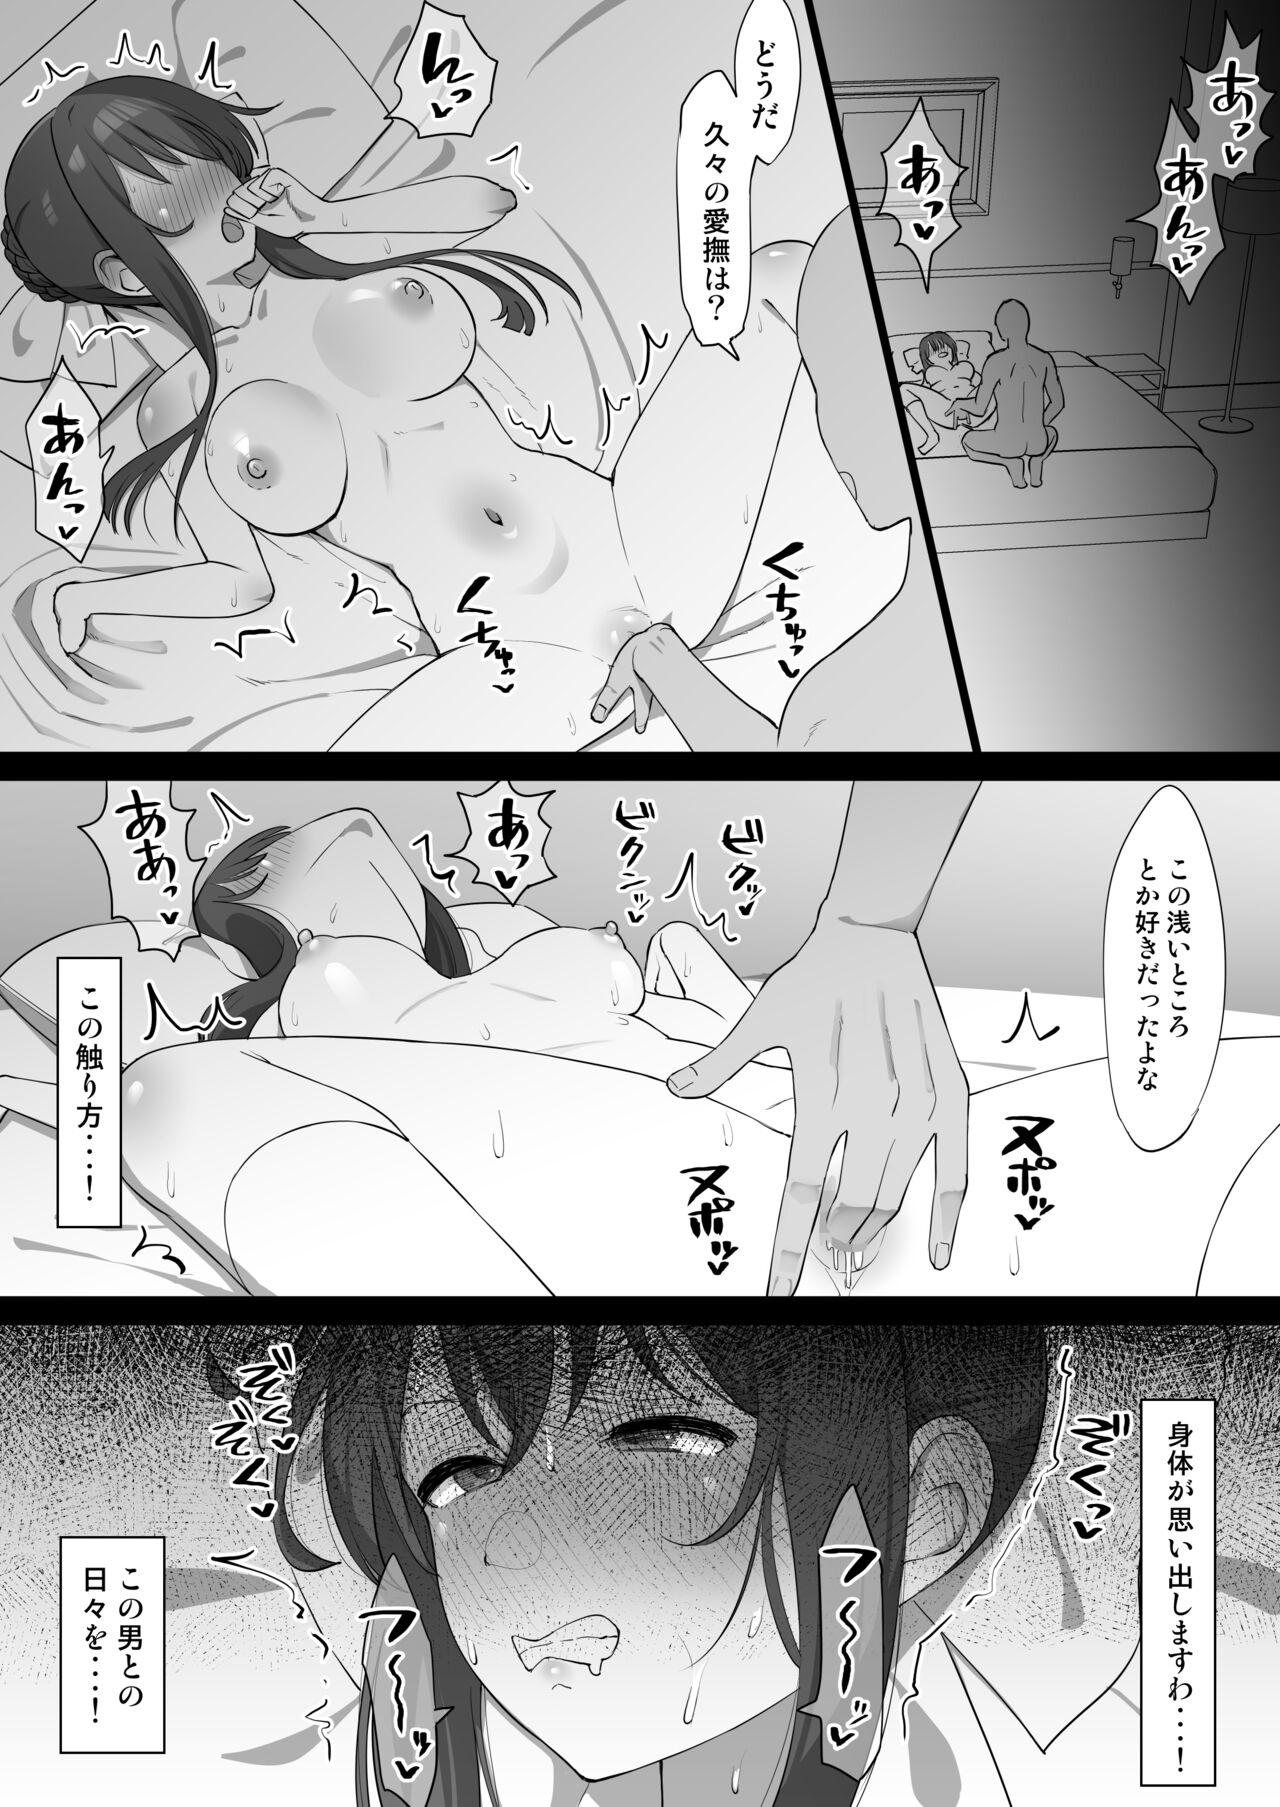 Reverse Tamao ga Otoko to Hisashiburi ni Ecchi suru Manga - Strawberry panic Panty - Picture 2